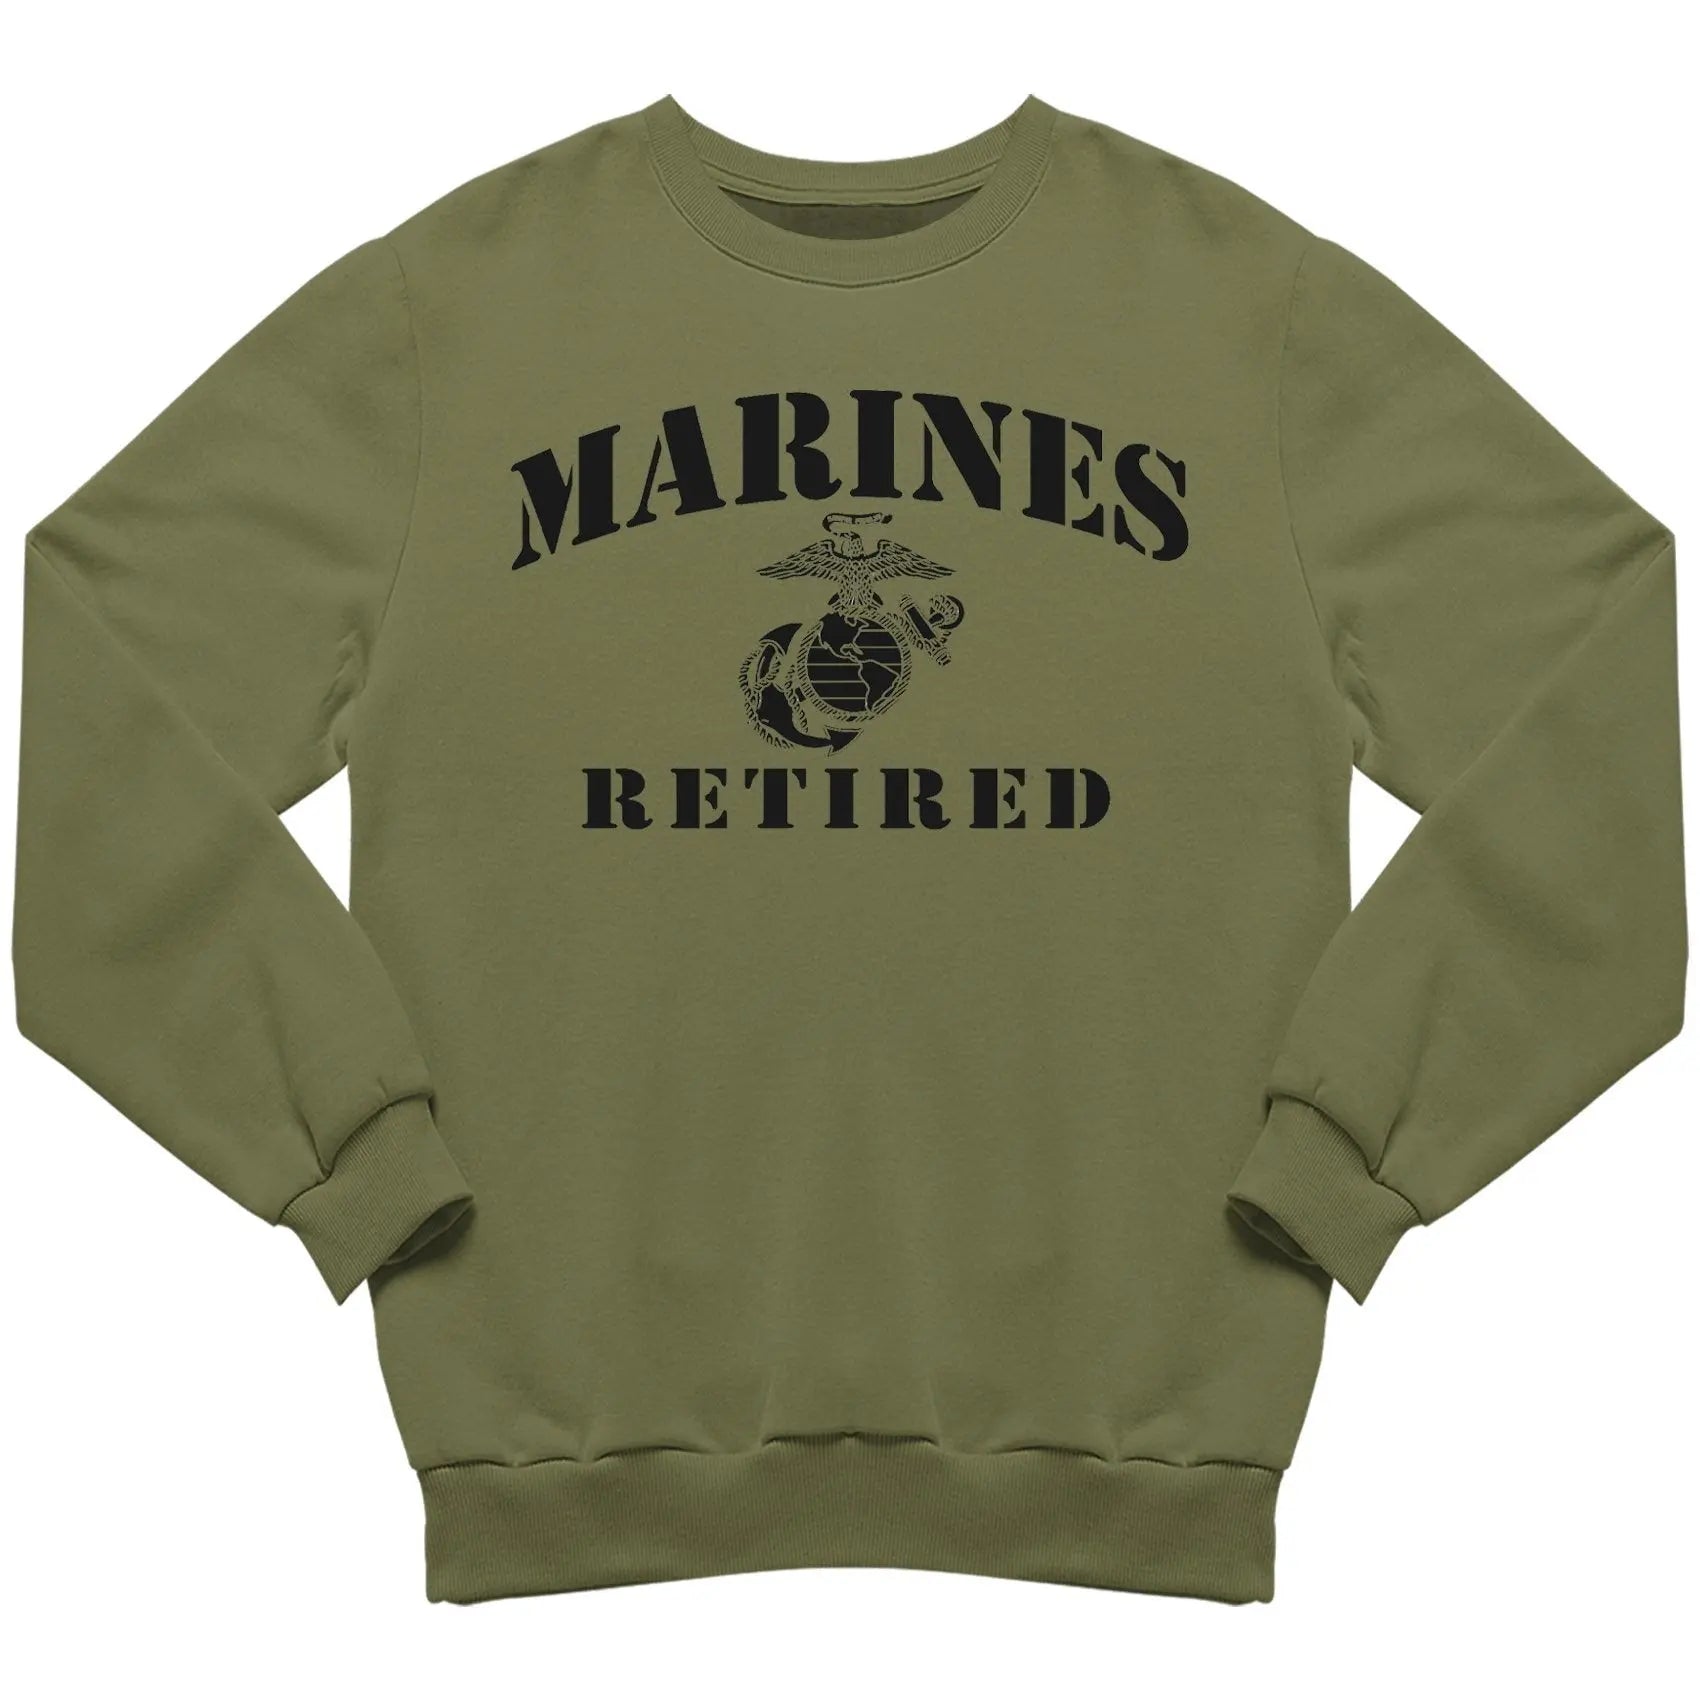 Marines EGA Retired Sweatshirt - Marine Corps Direct